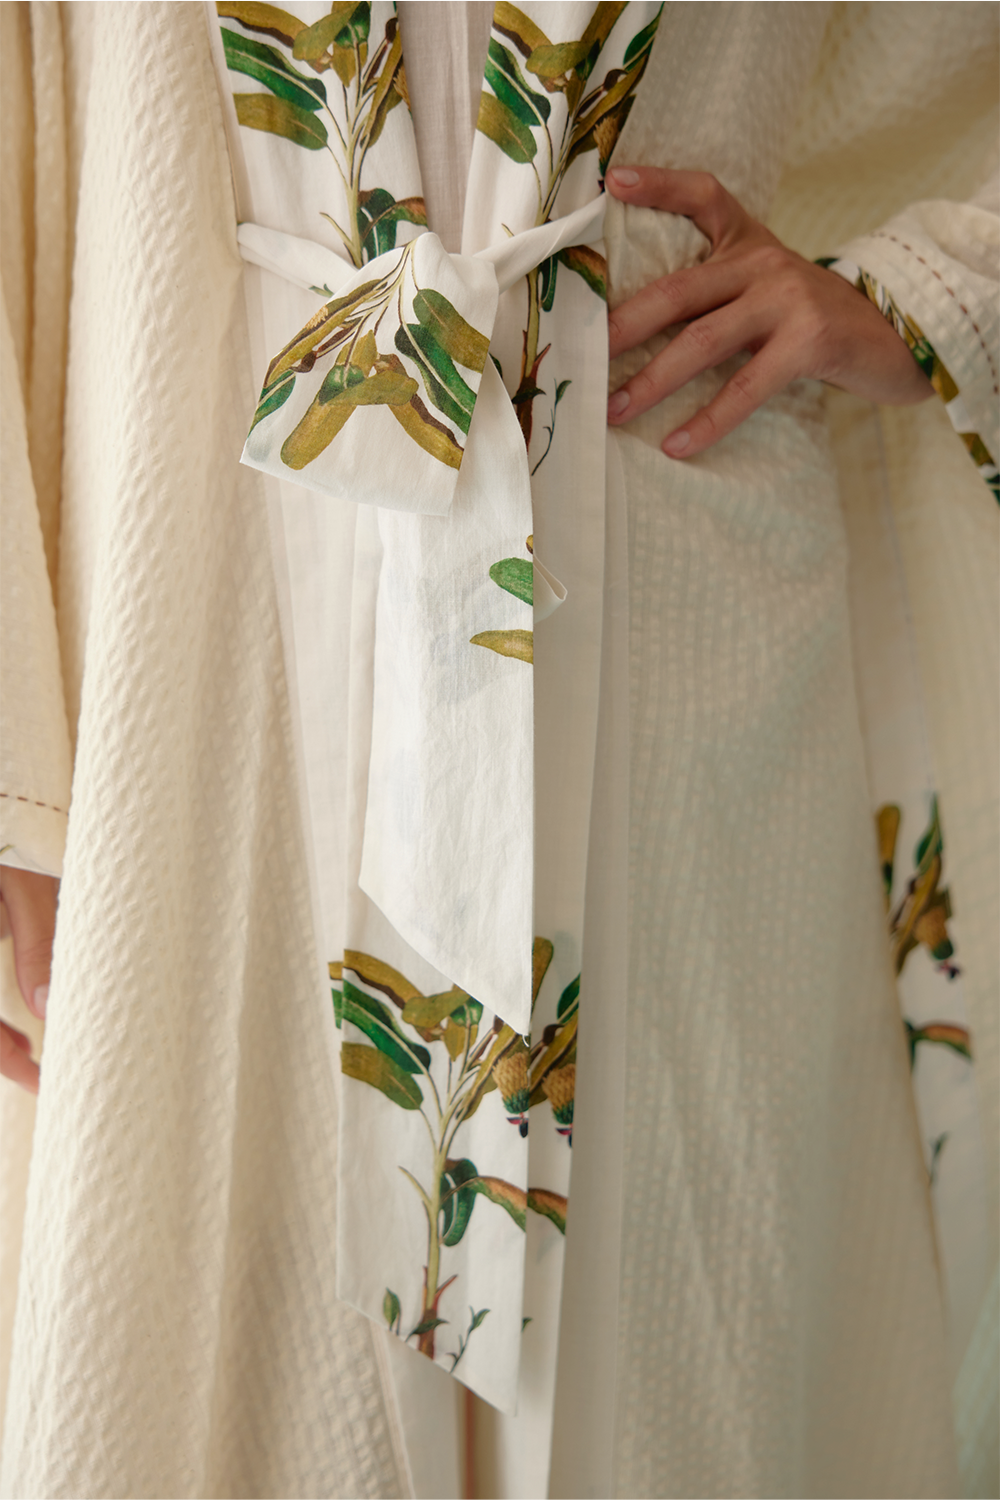 Cream Kimono Sleeves Overgarment